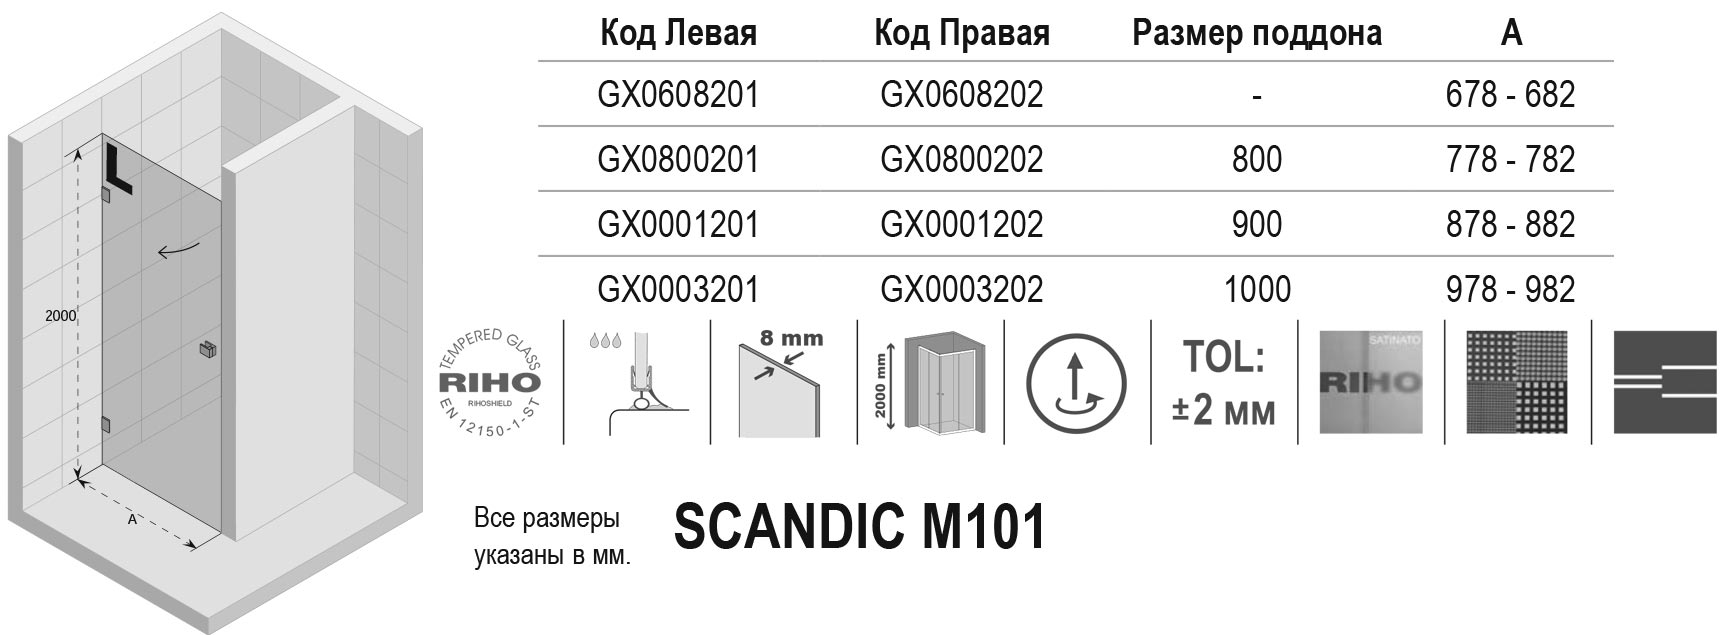 Чертёж Riho Scandic M101 GX0001201